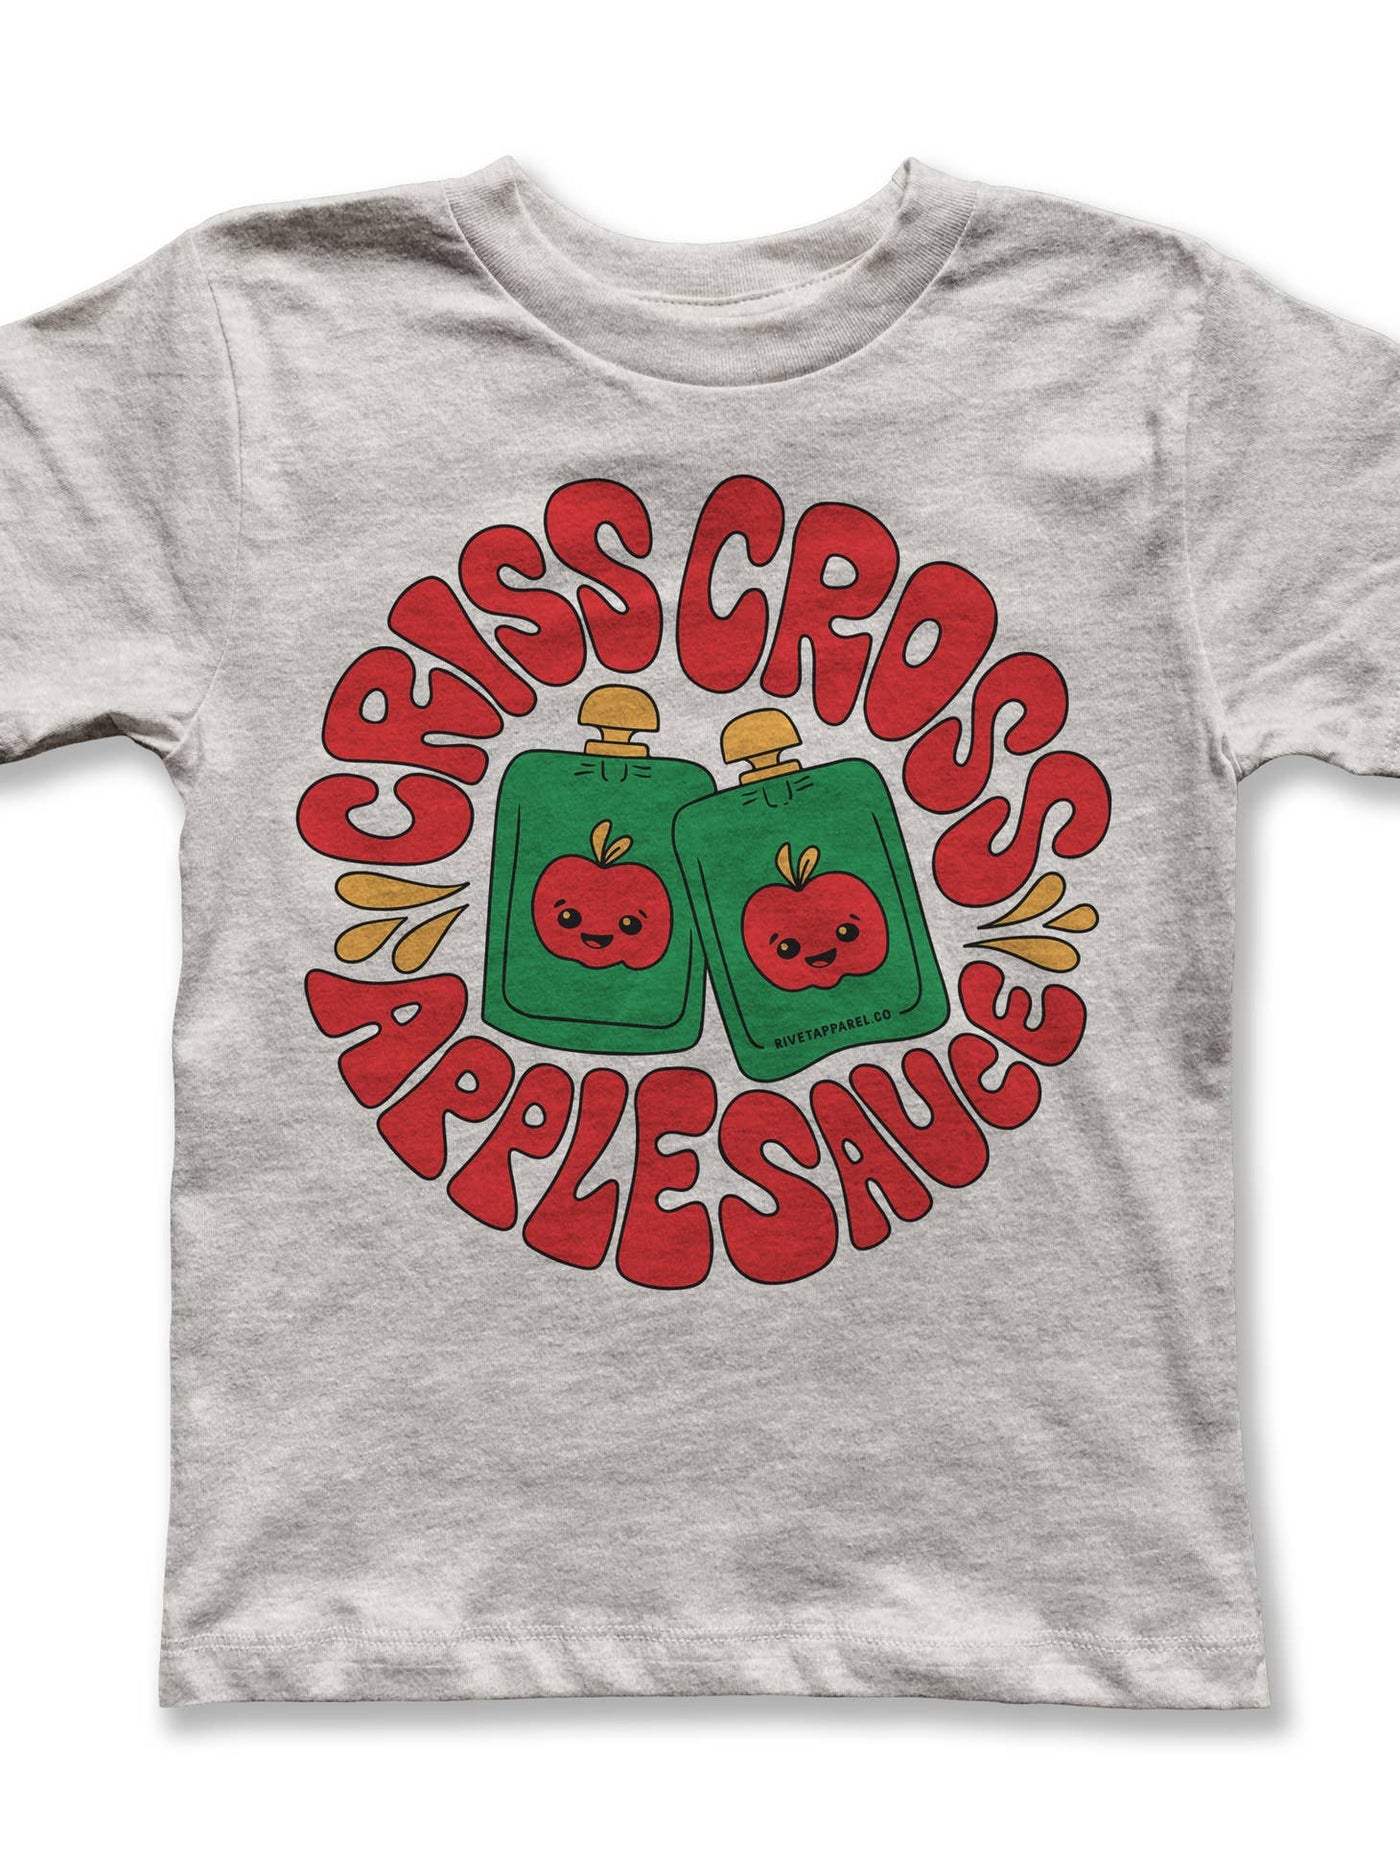 Criss Cross Applesauce Kid's Tee